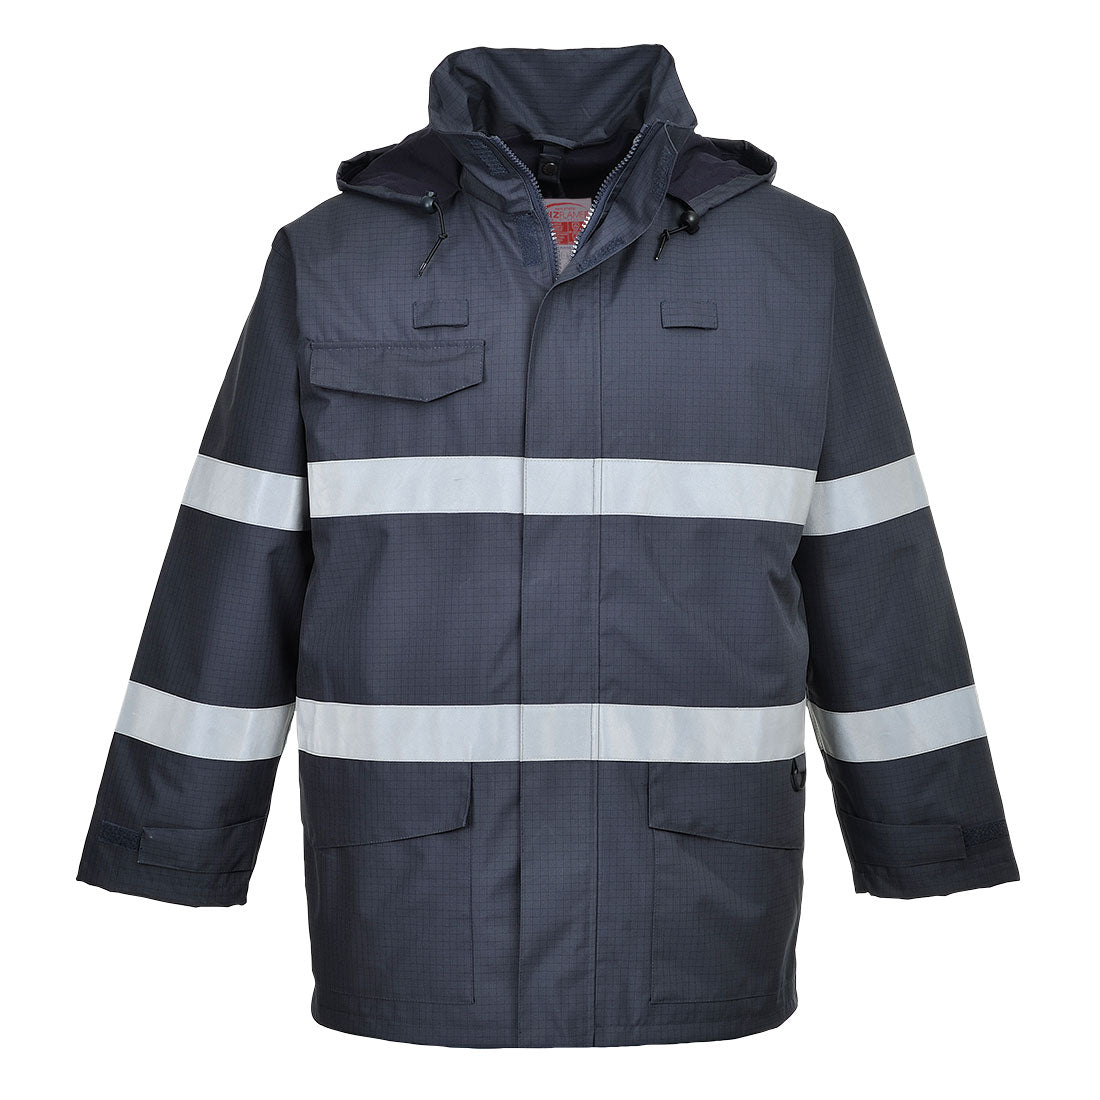 Bizflame Rain Multi Protection Jacket - arbeitskleidung-gmbh